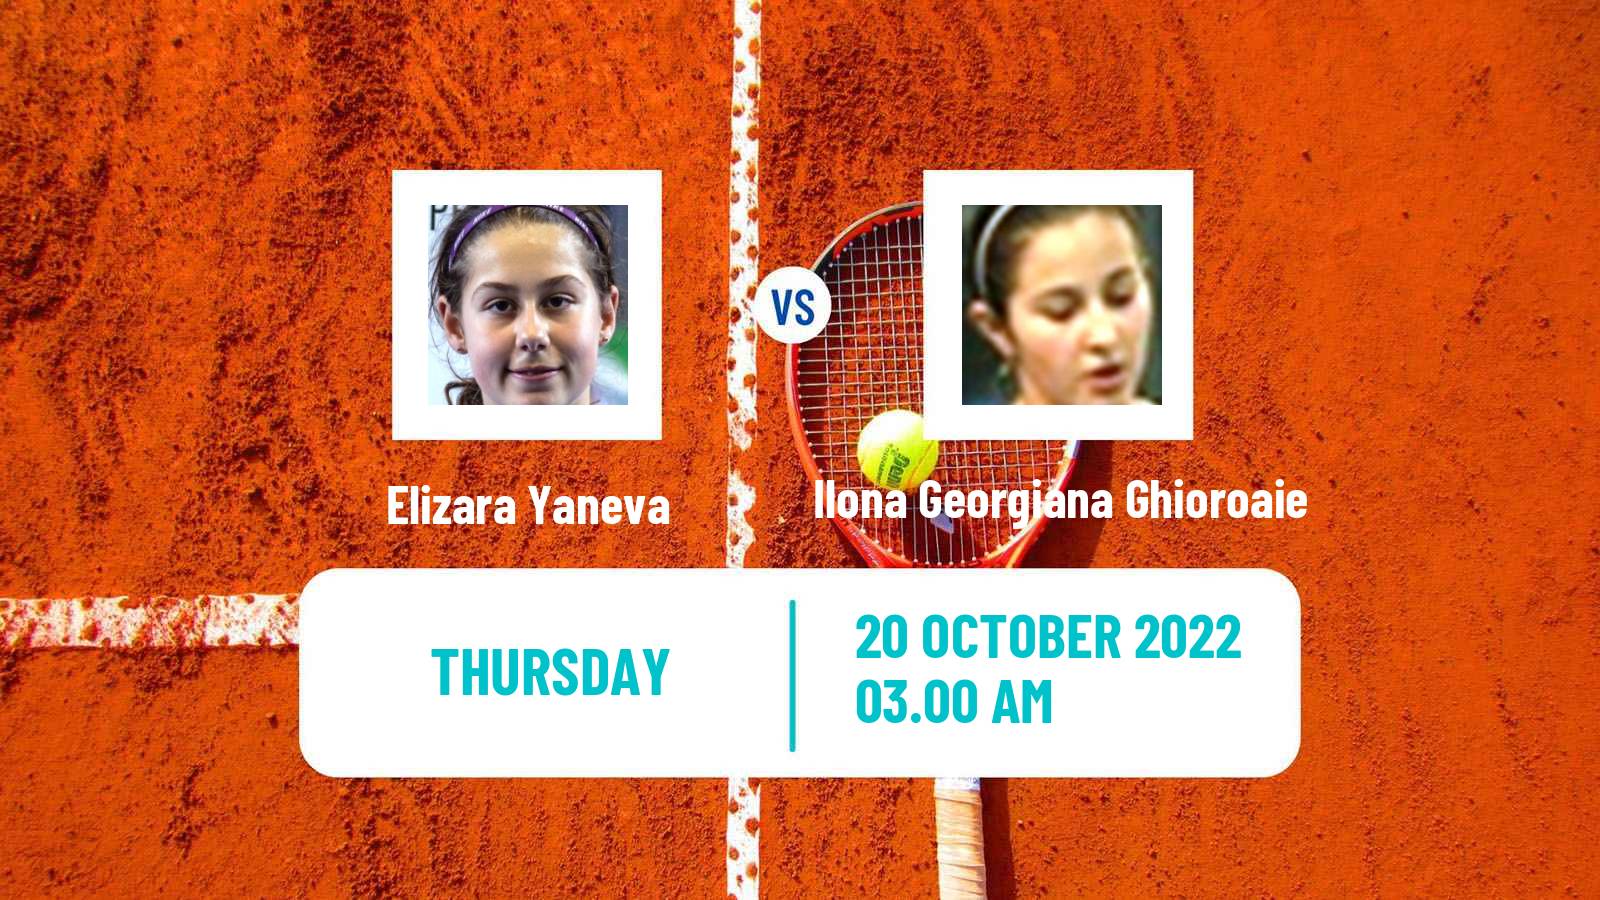 Tennis ITF Tournaments Elizara Yaneva - Ilona Georgiana Ghioroaie